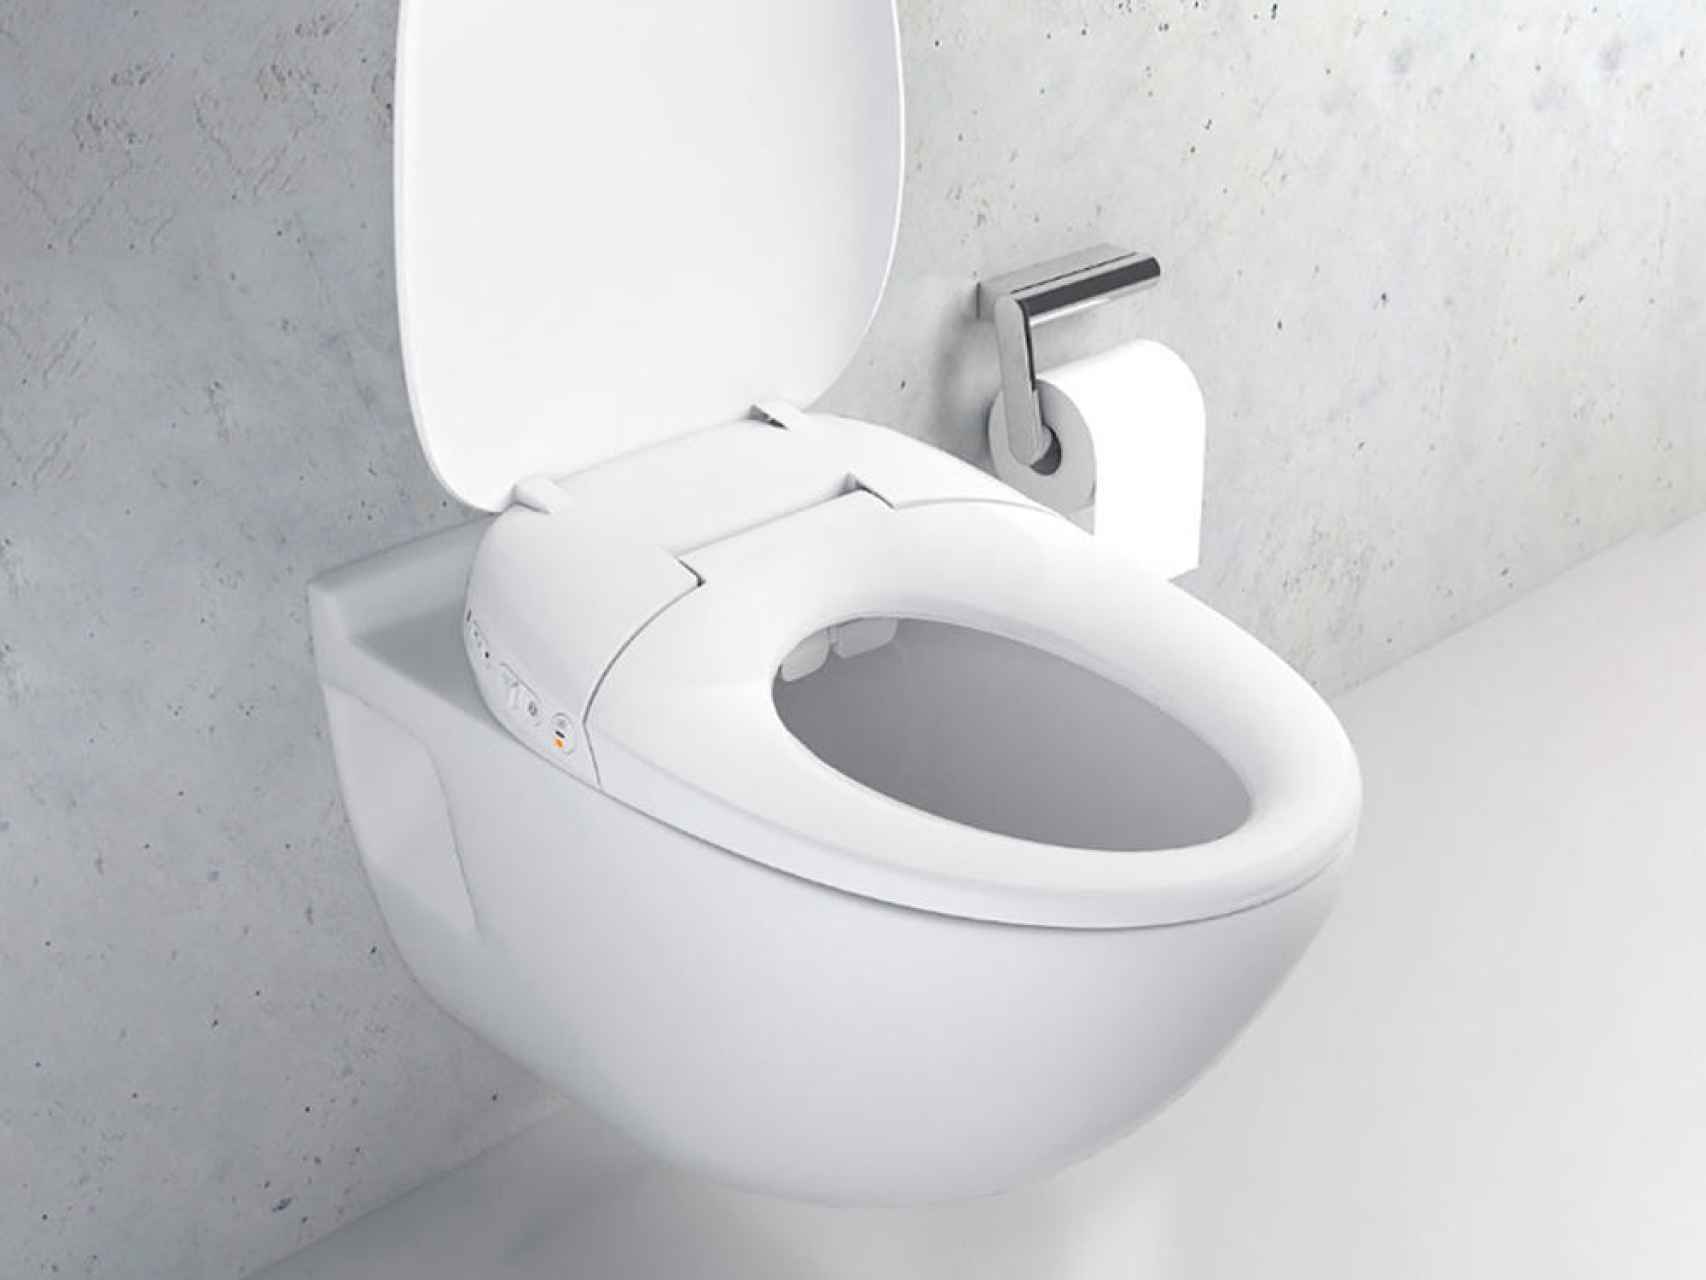 Ficticio Misión perfil Lo último de Xiaomi es una tapa de WC inteligente con calefacción